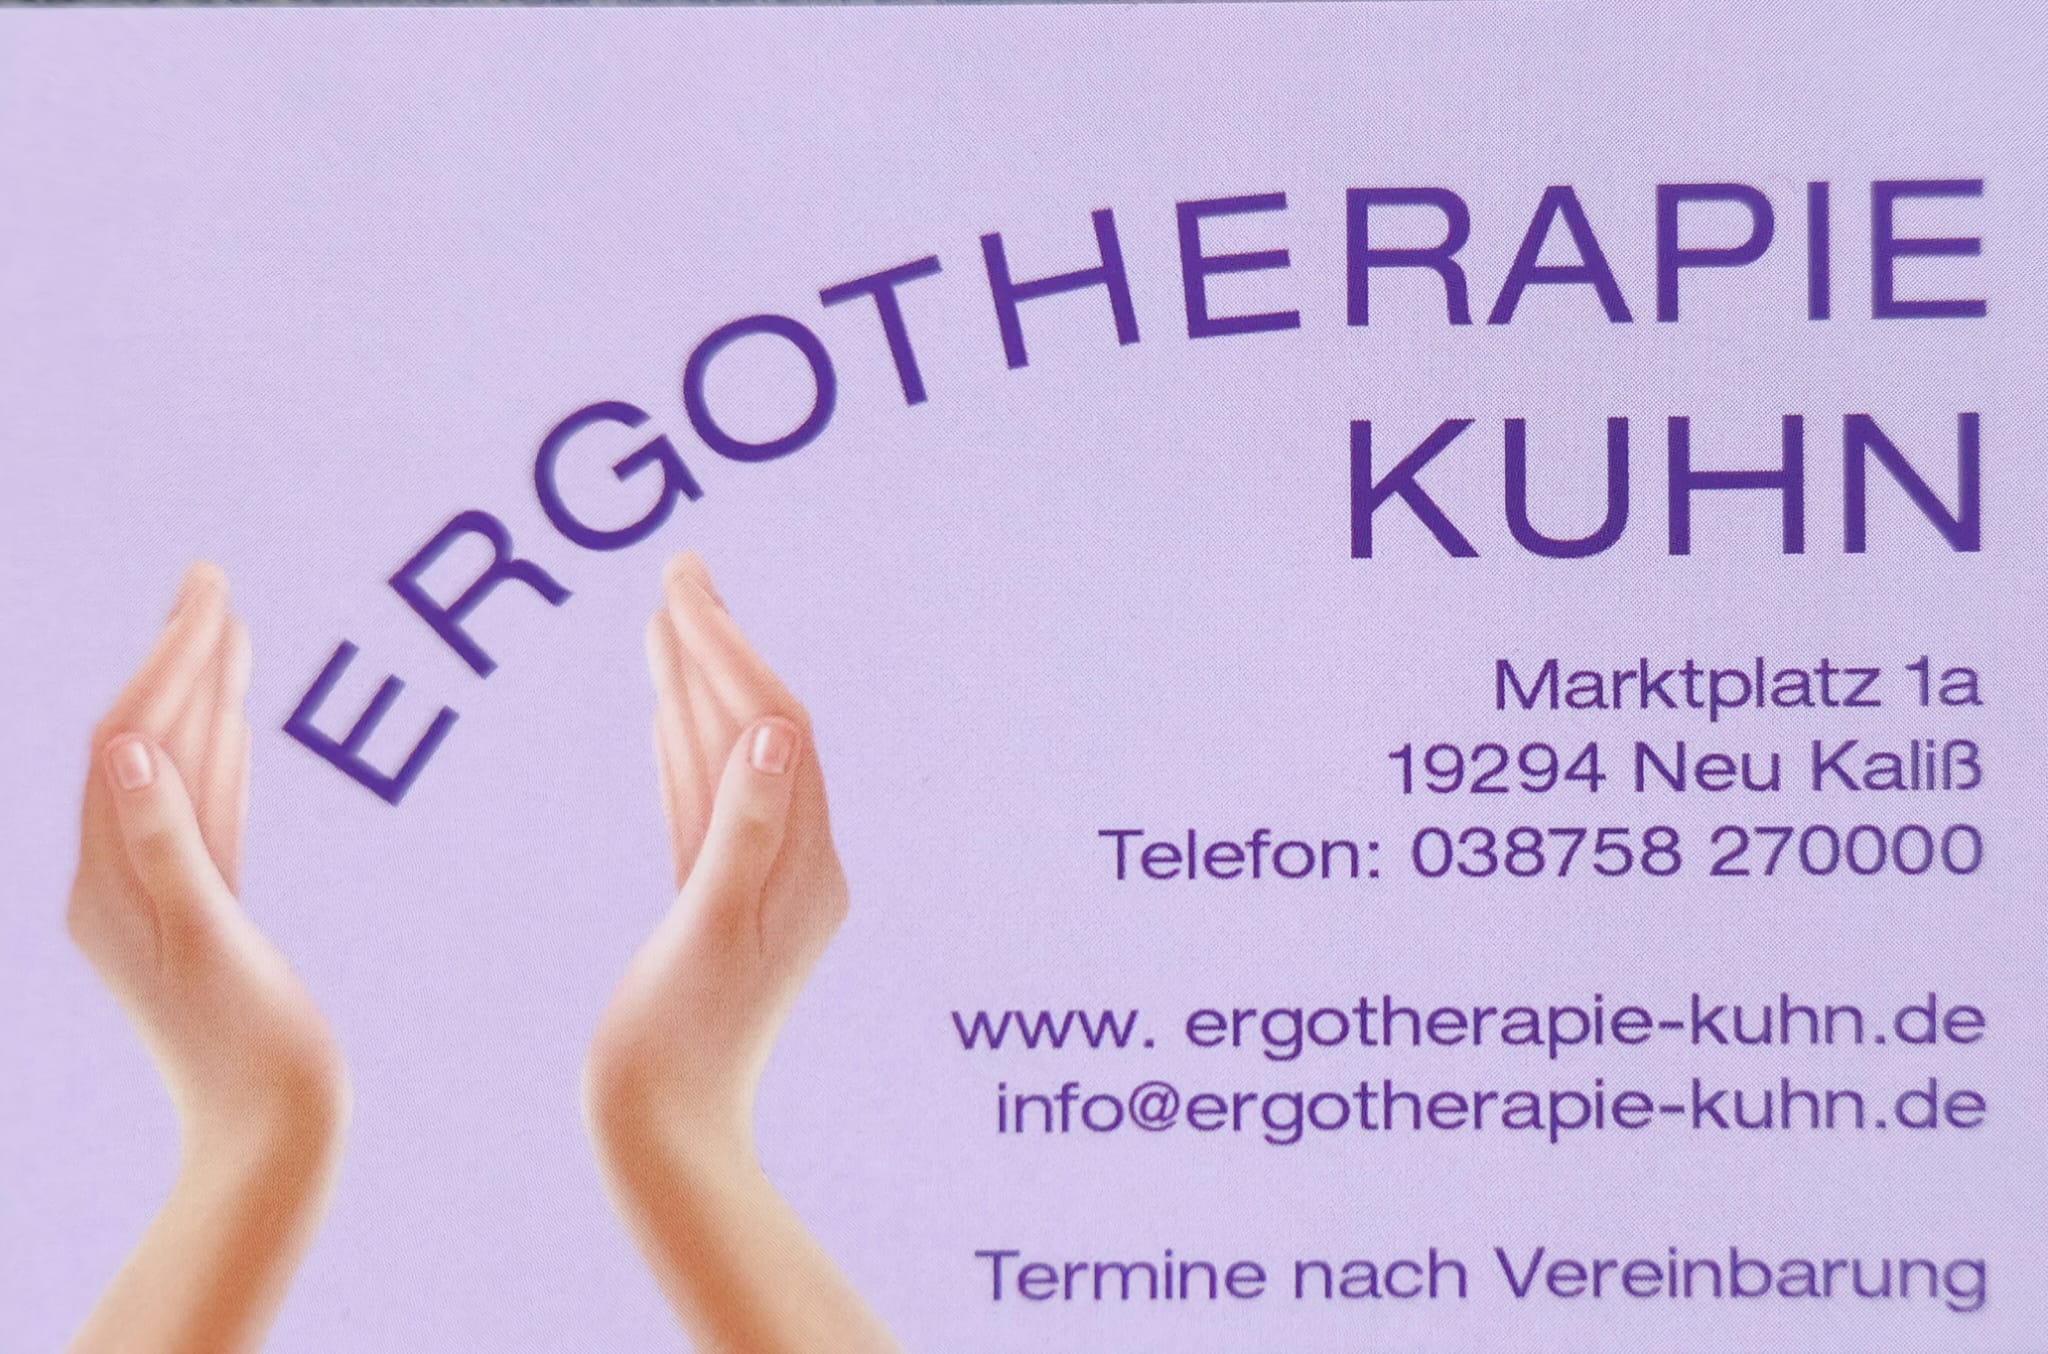 (c) Ergotherapie-kuhn.de